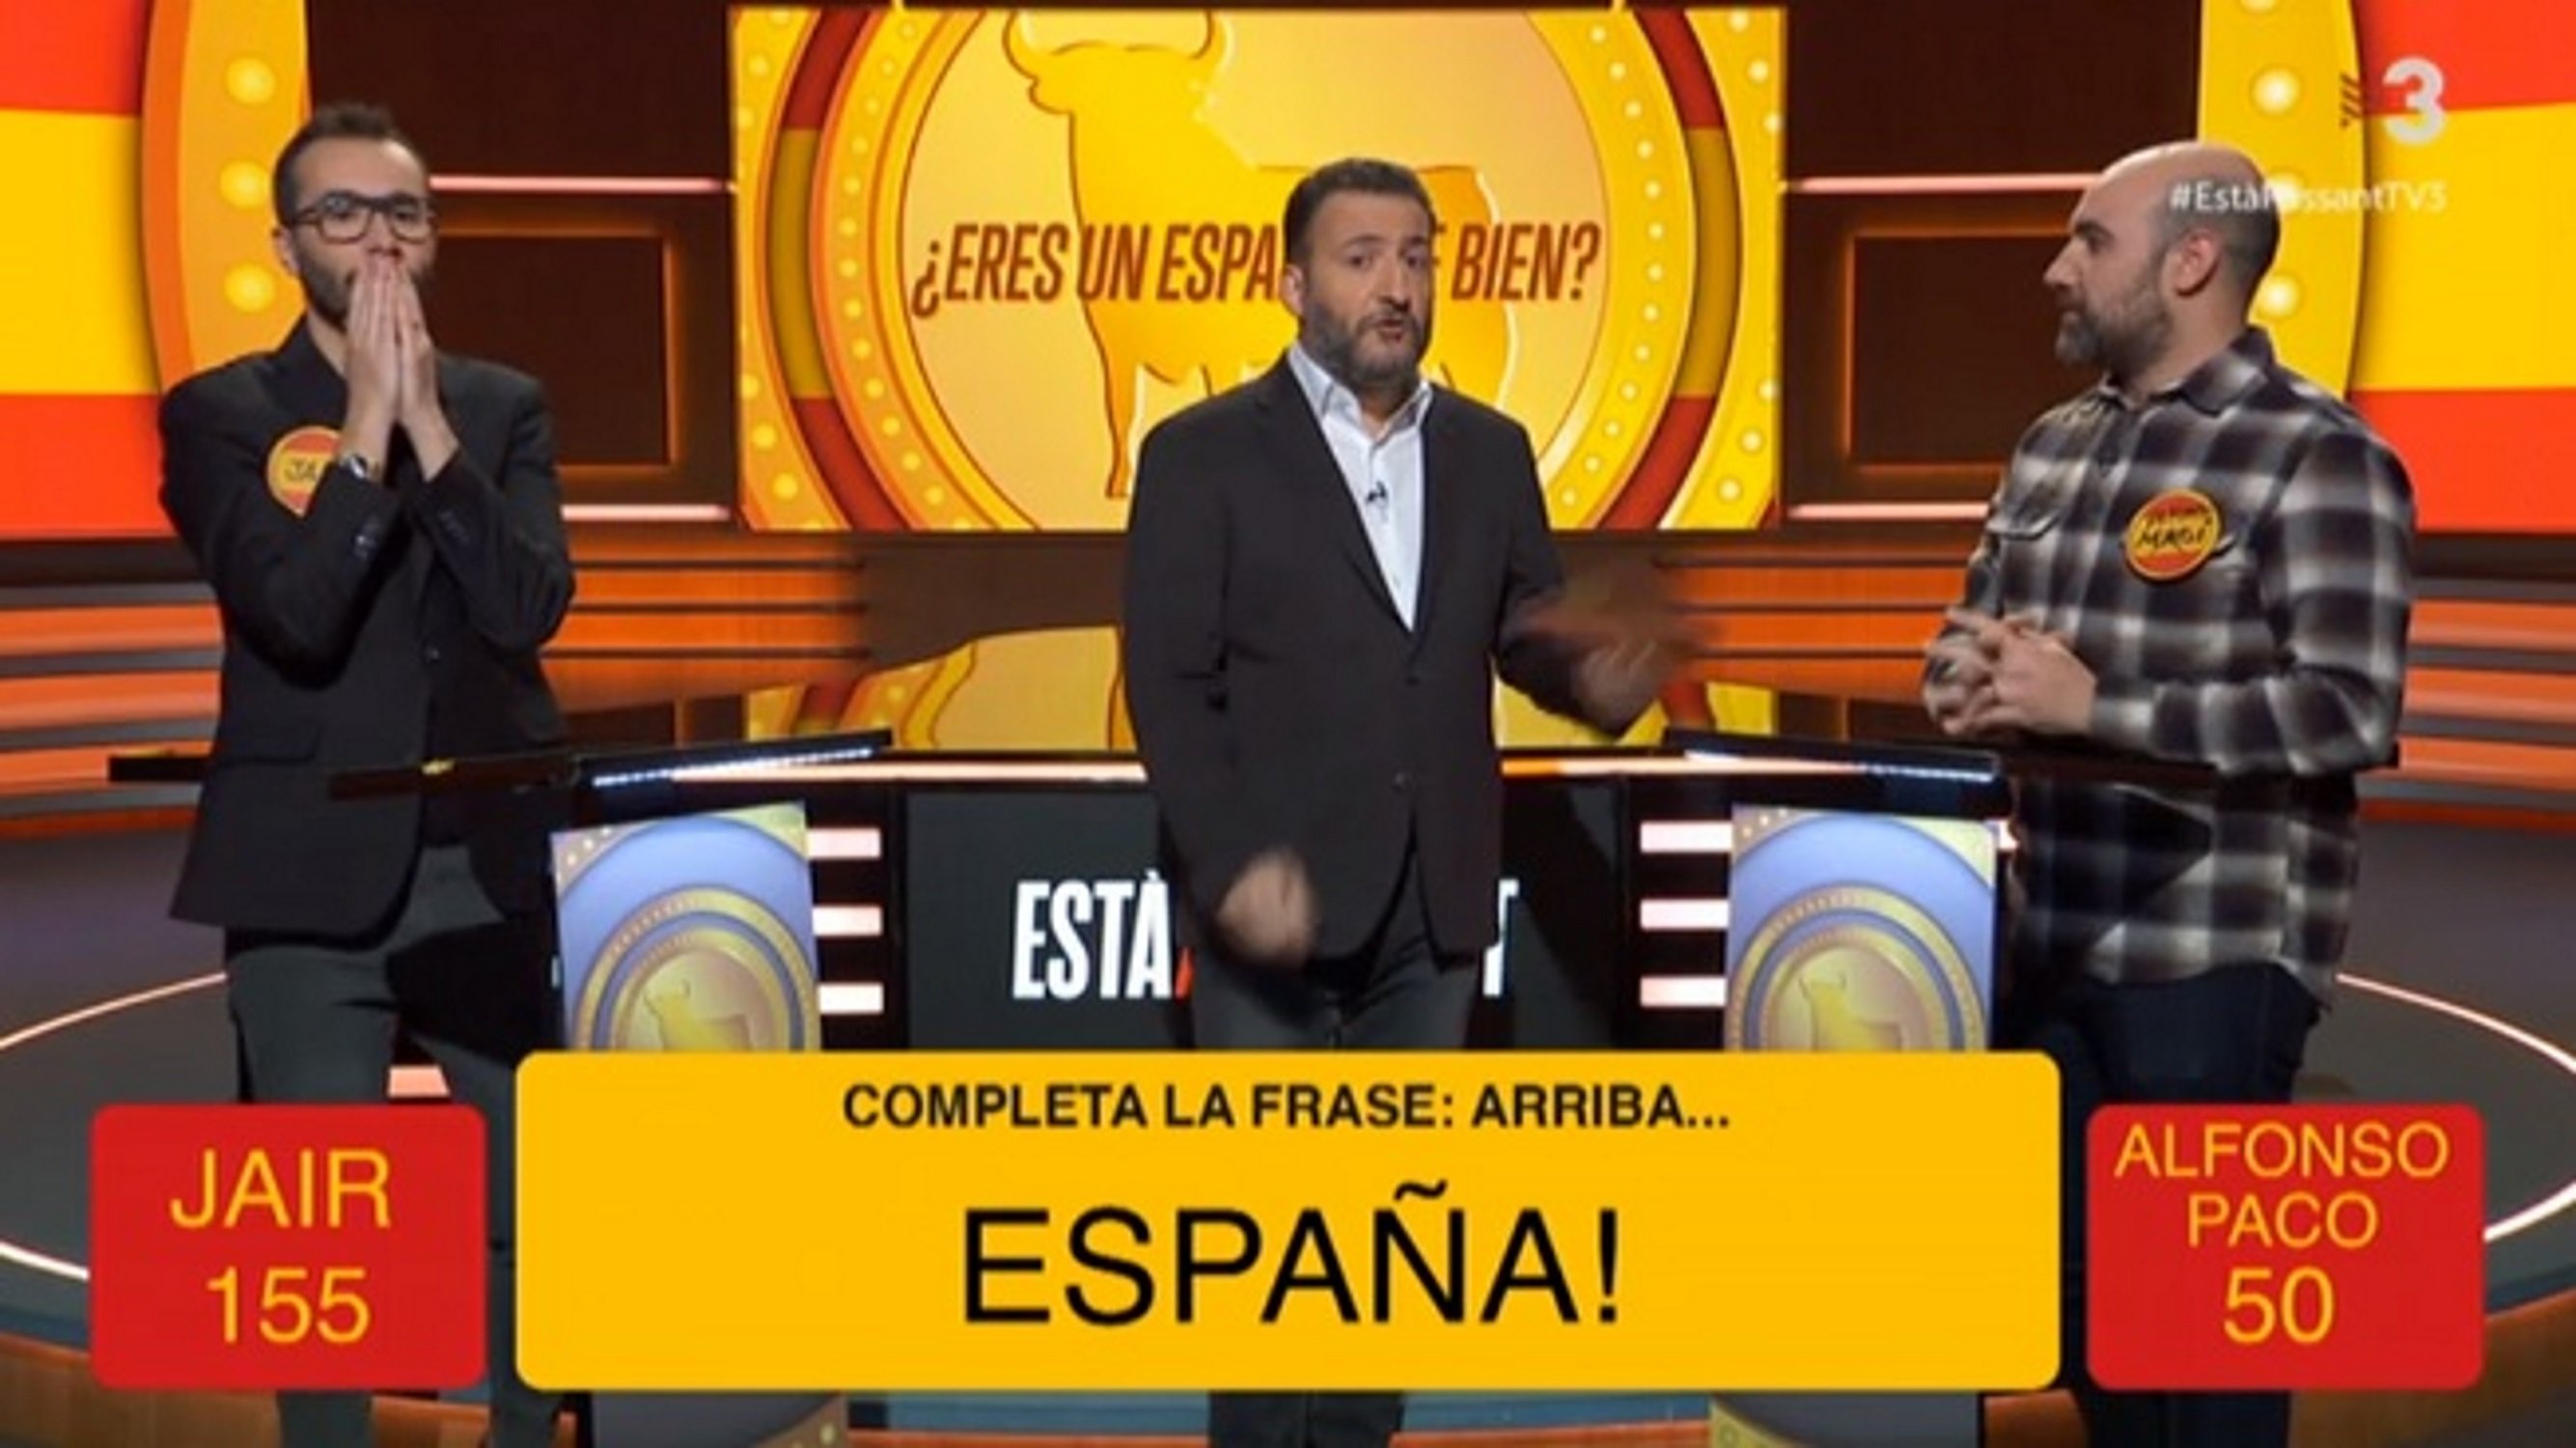 Toni Soler explica en què consisteix ser “un español de bien” a TV3